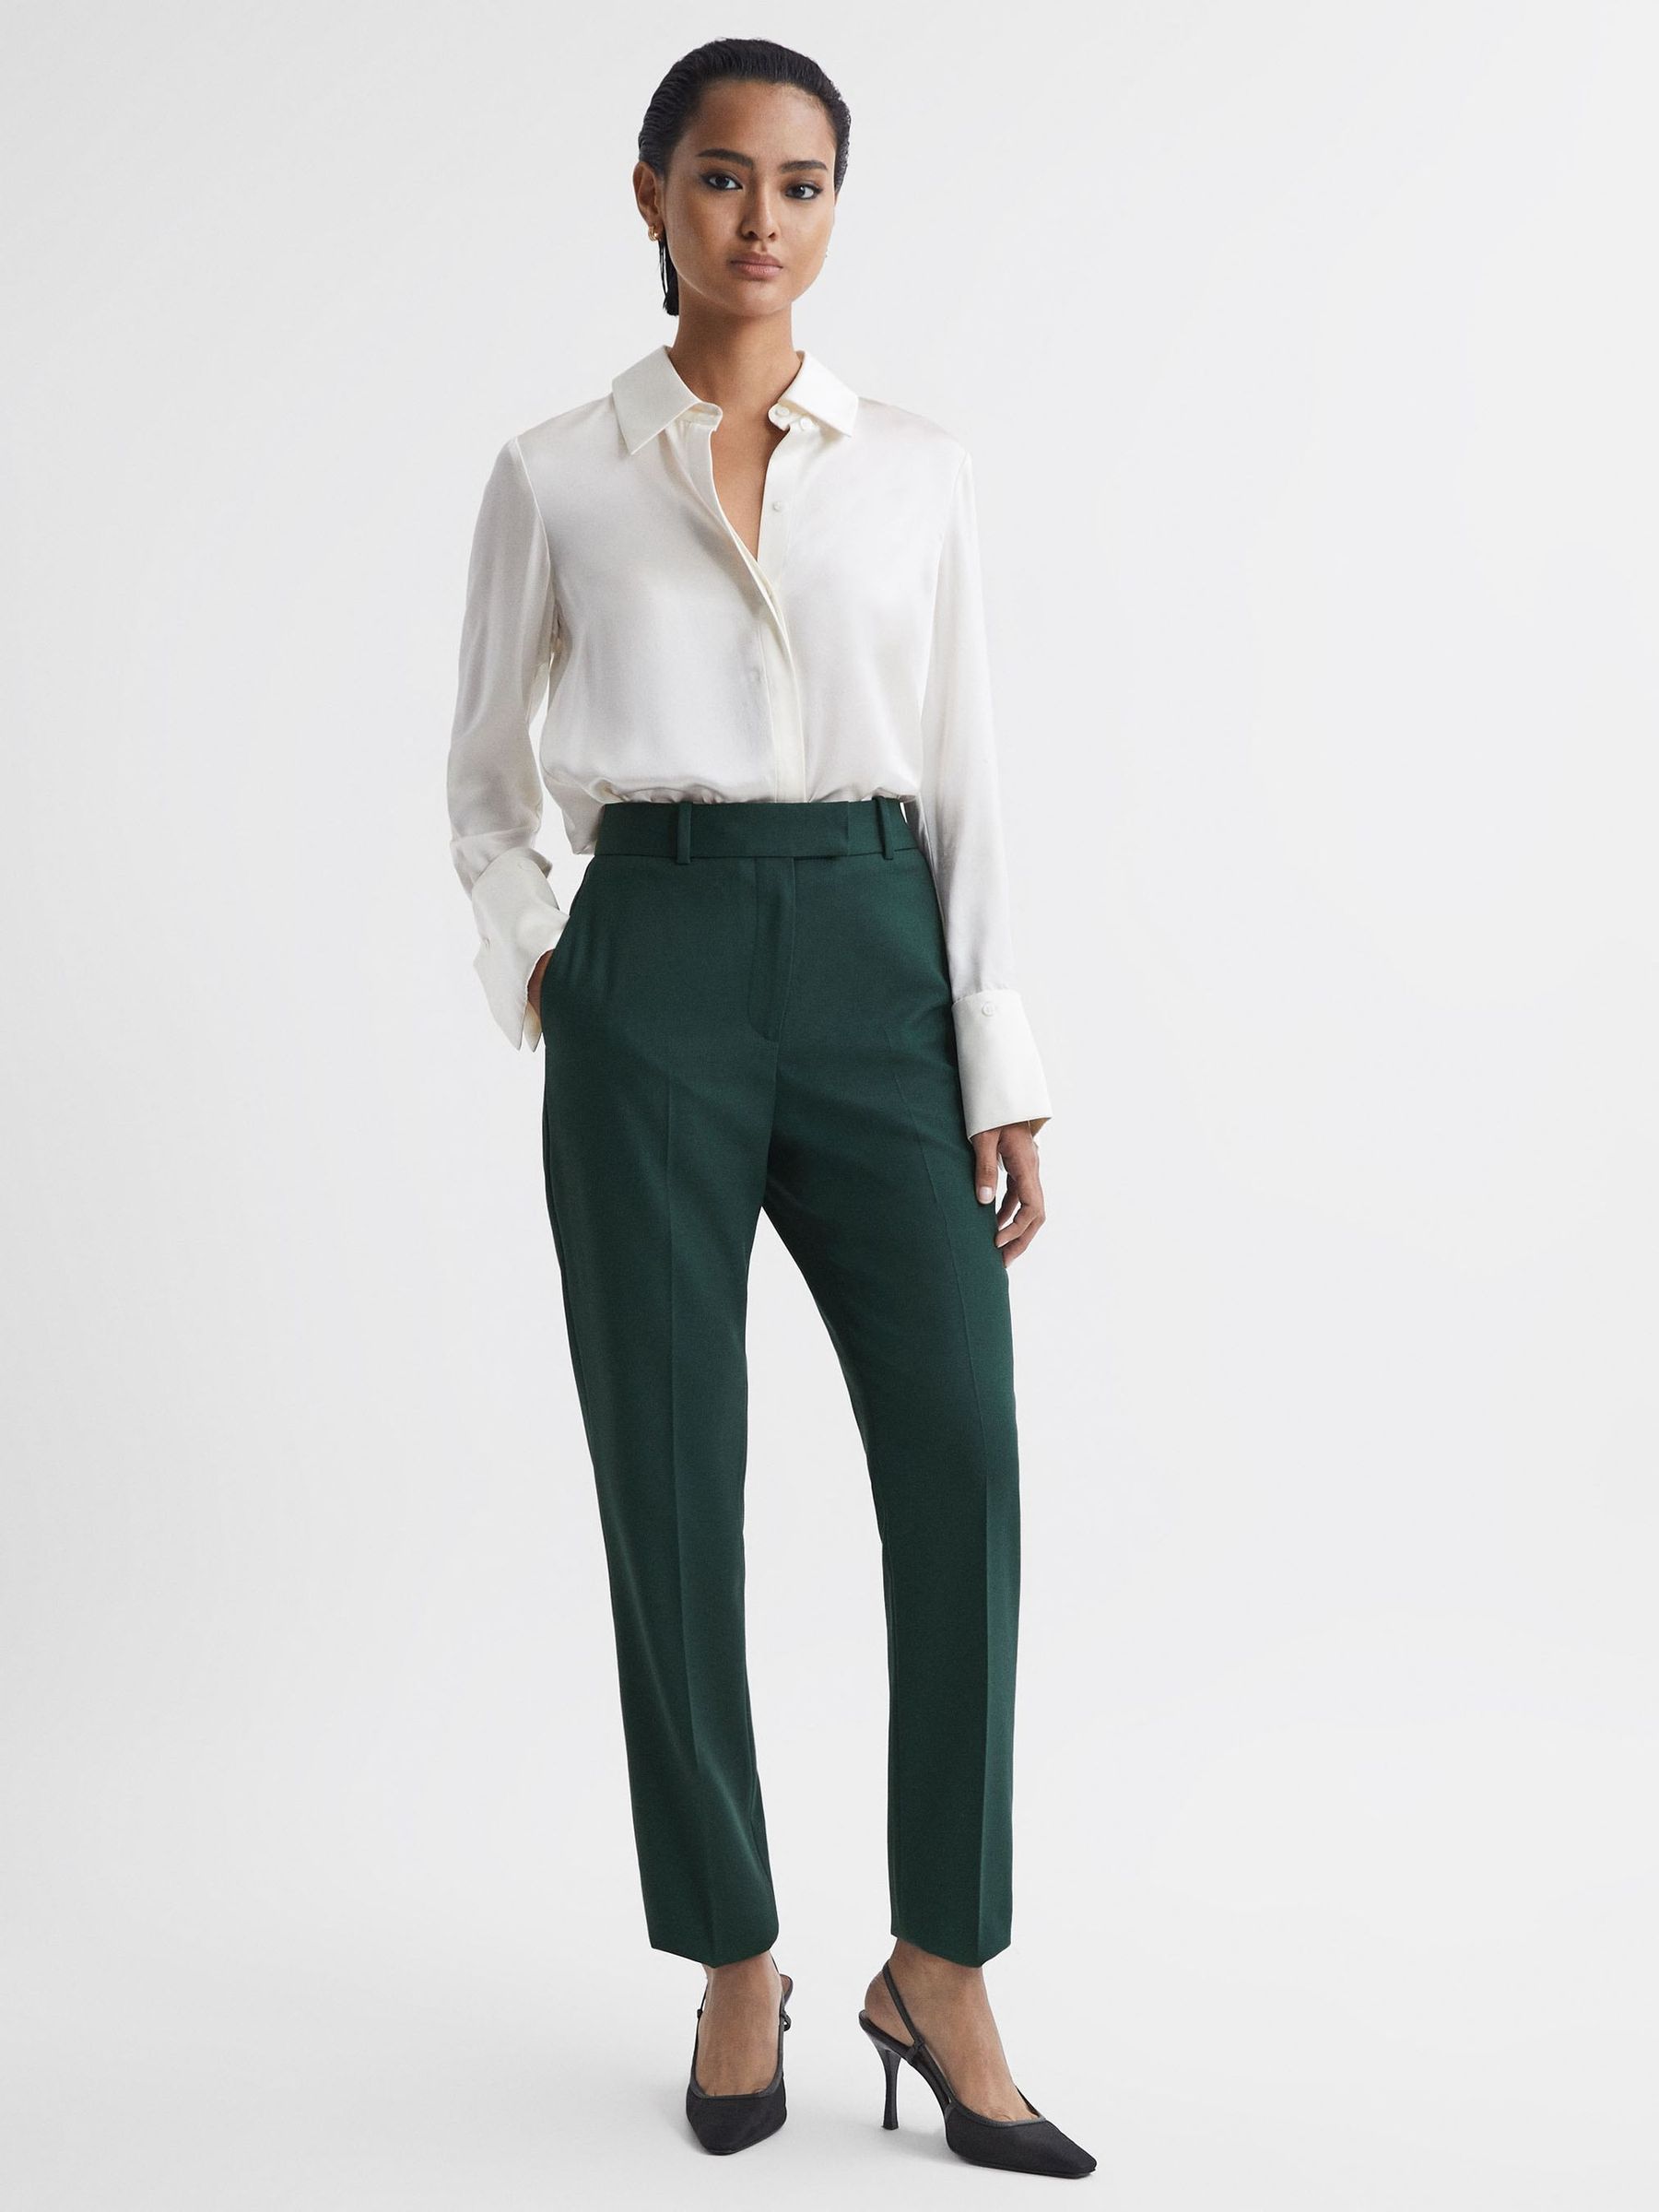 Reiss Jade Slim Slim Fit Wool Blend Mid Rise Suit Trousers | REISS USA